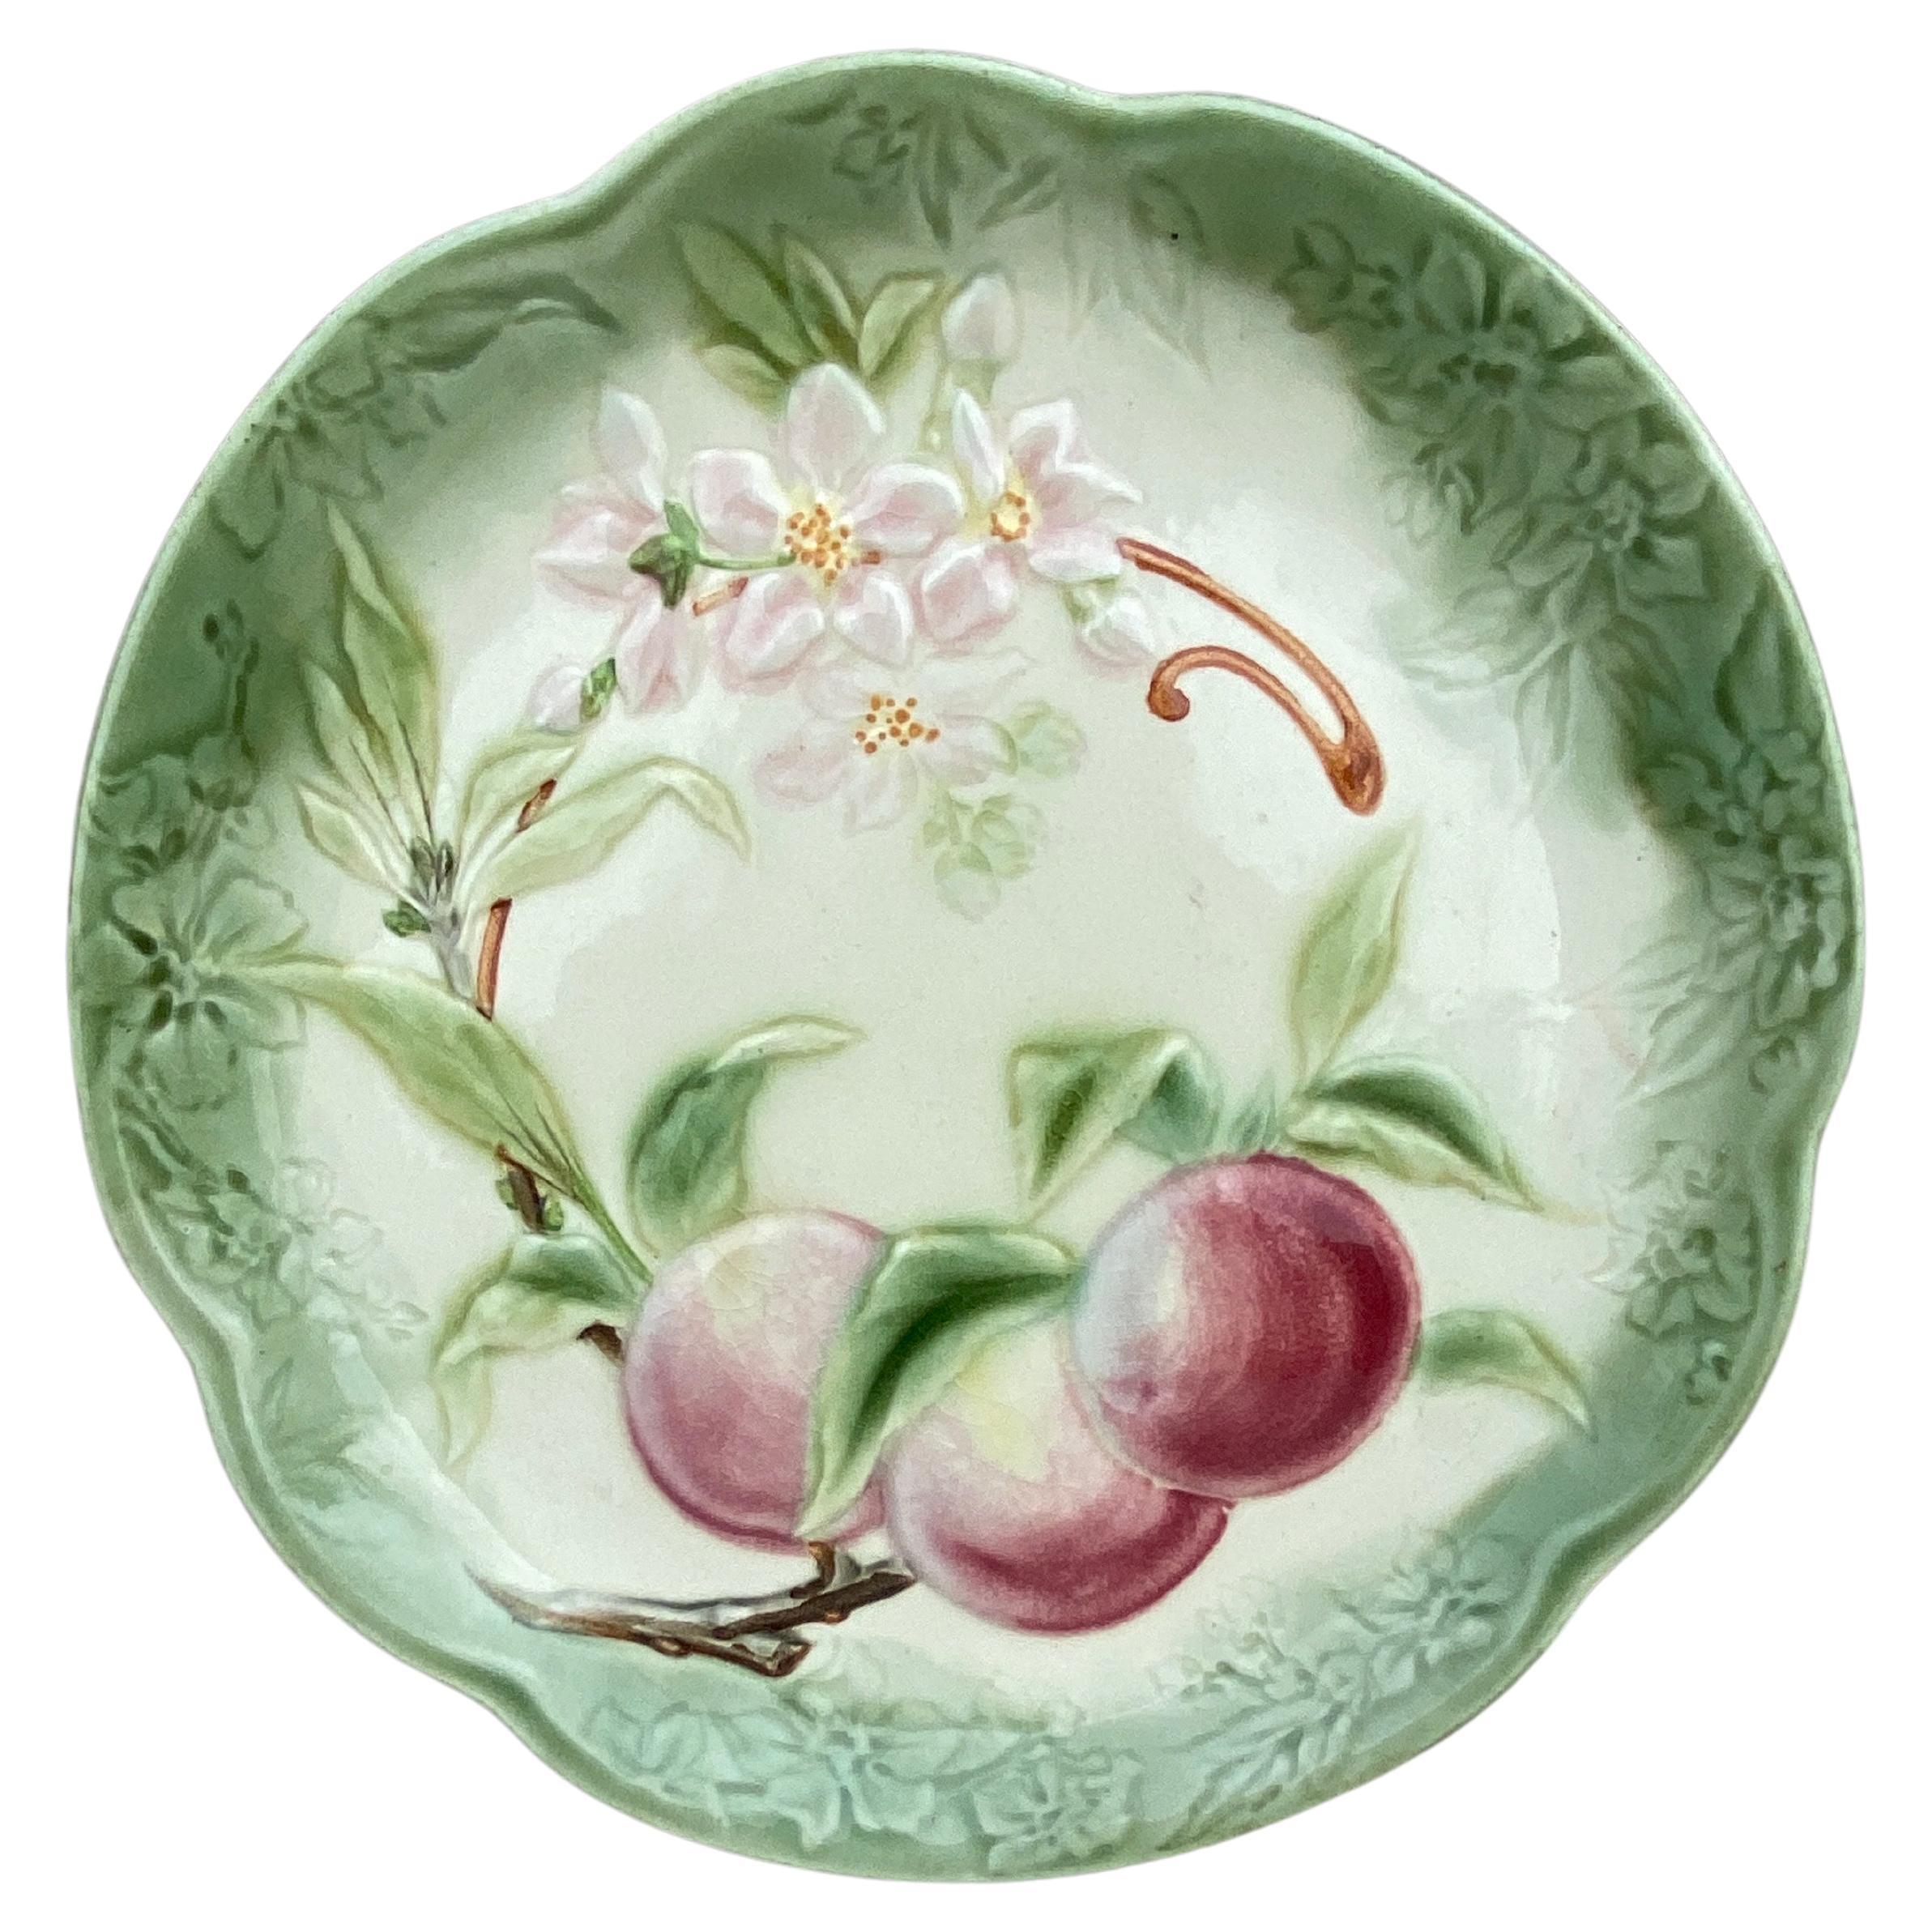 Assiette à pommes Choisy Le Roi du 19ème siècle